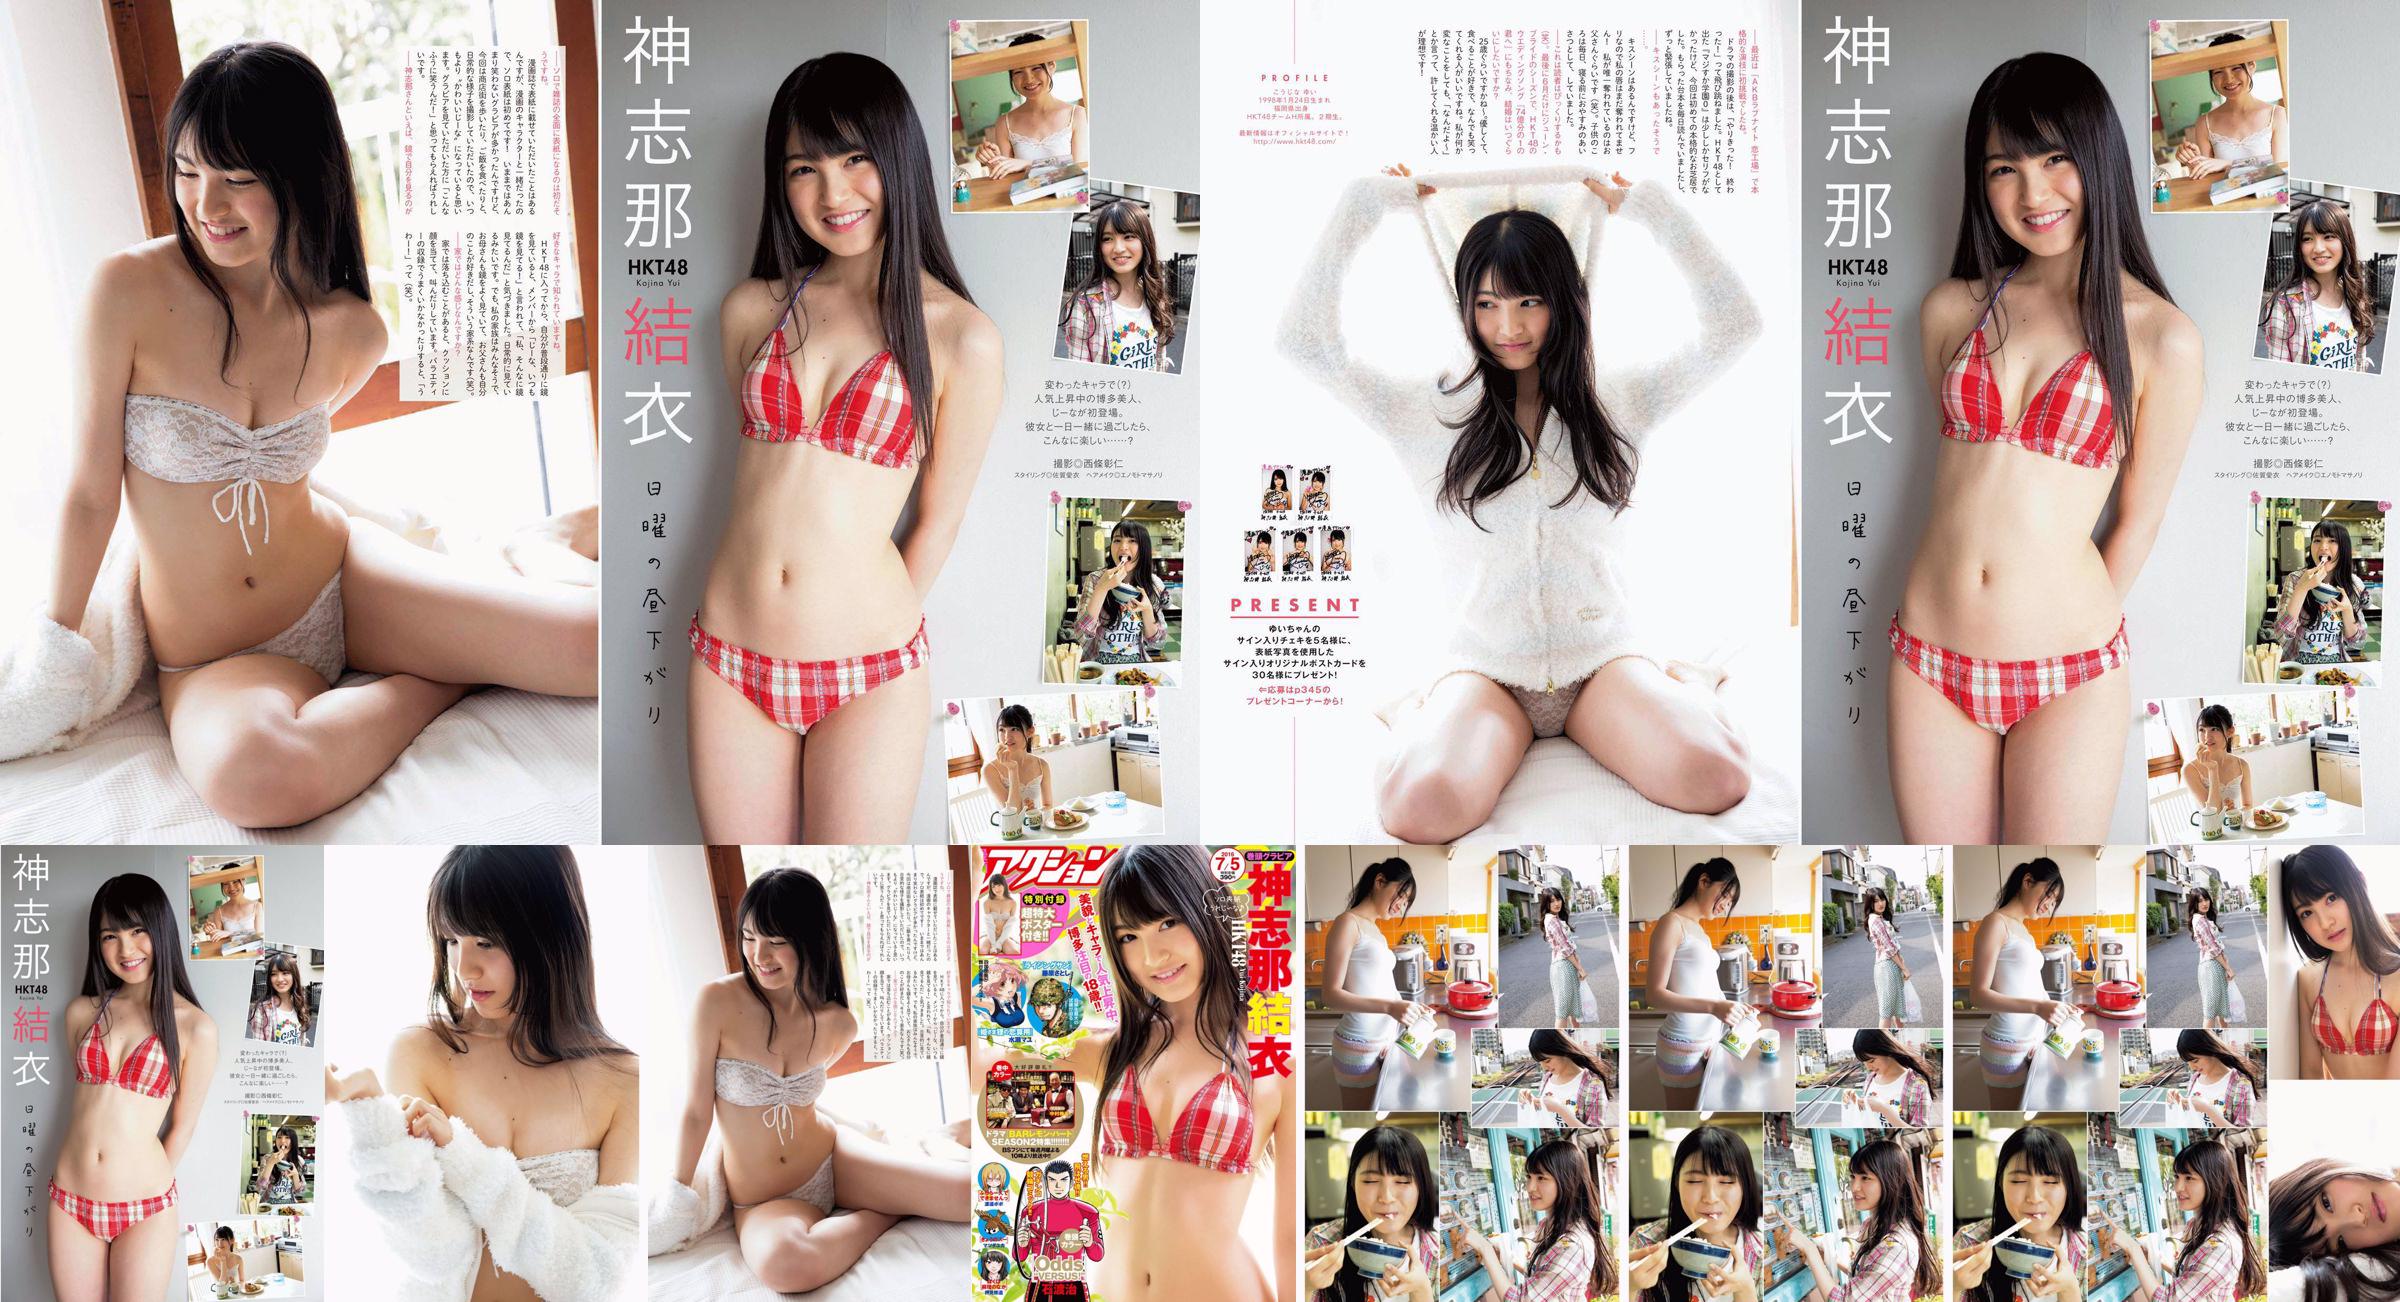 [Manga Action] Shinshina Yui 2016 N ° 13 Photo Magazine No.eccde2 Page 1